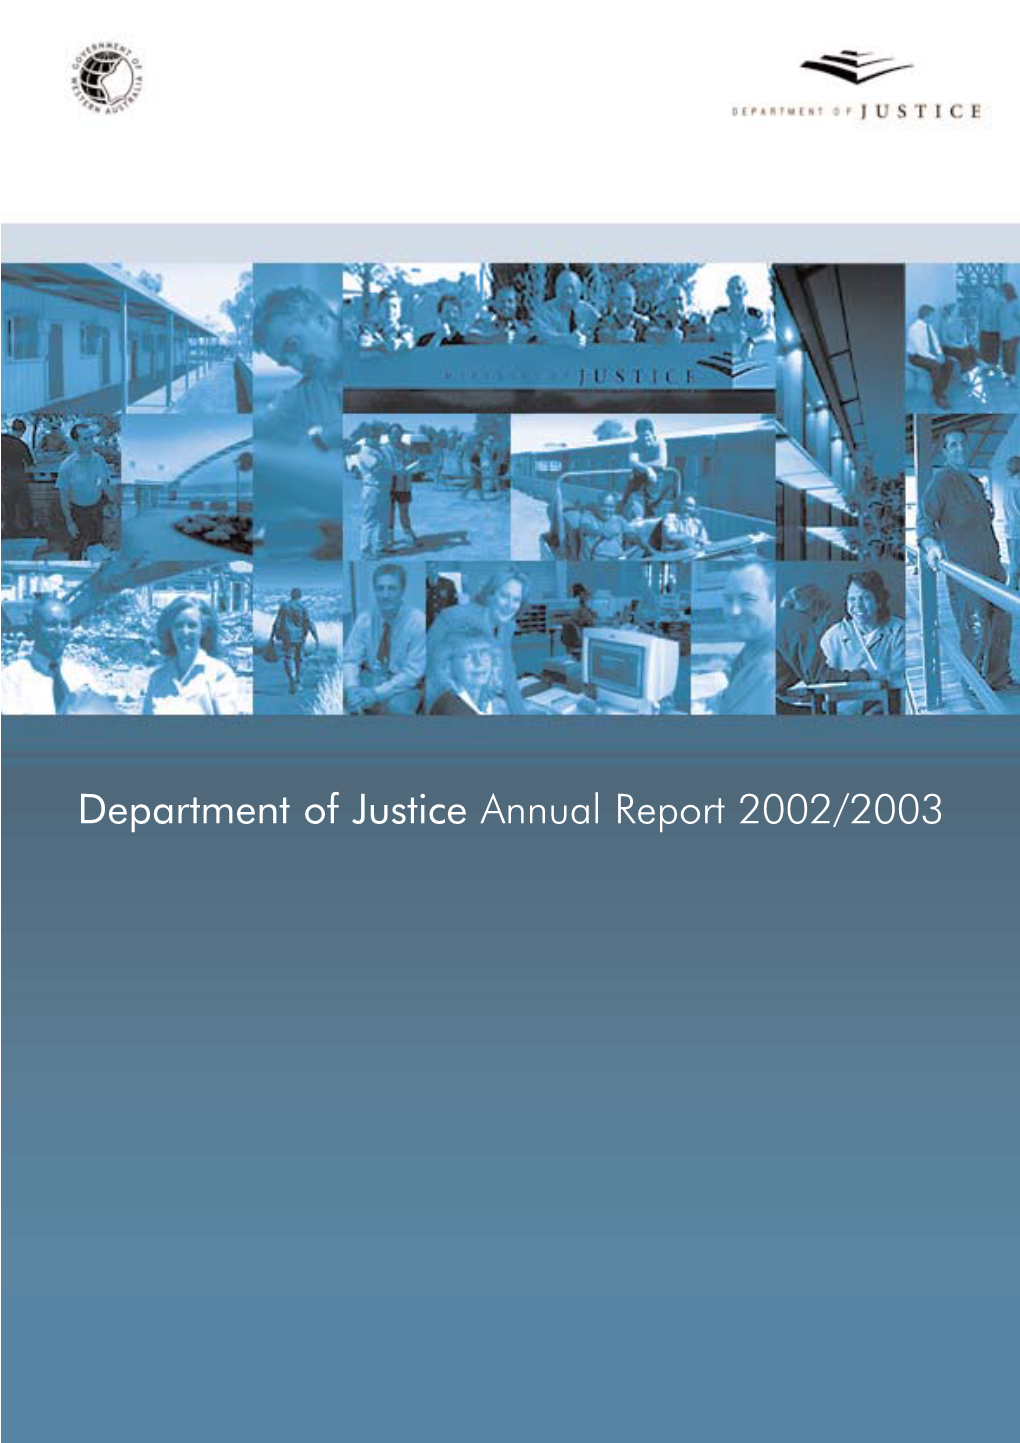 Doj Annual Report 2002/03